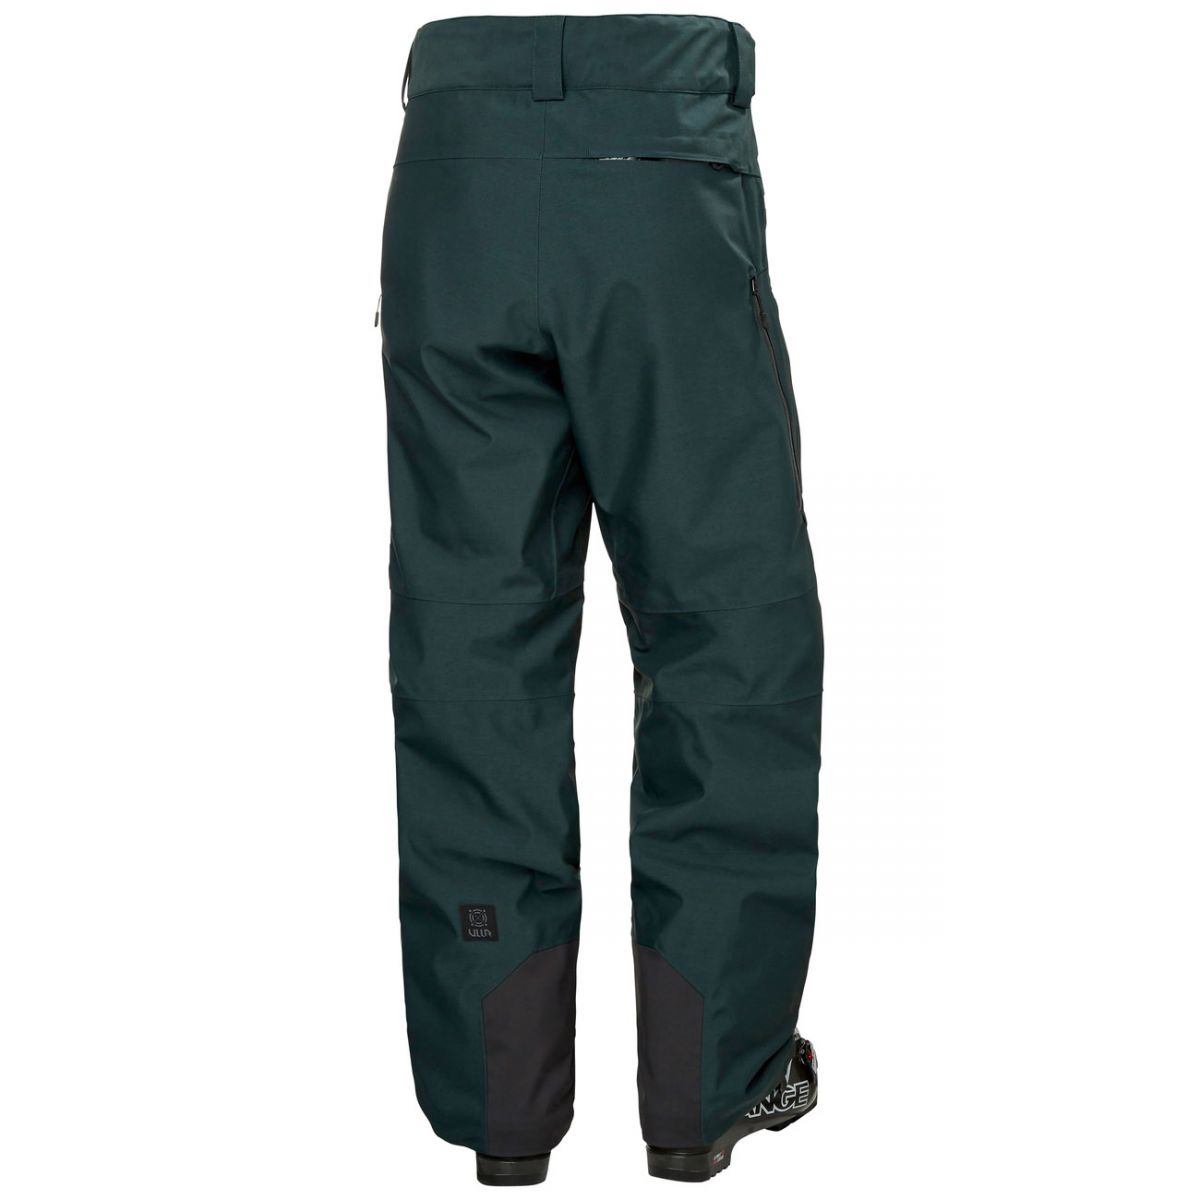 Helly Hansen Garibaldi 2.0, pantalons de ski, hommes, vert foncé